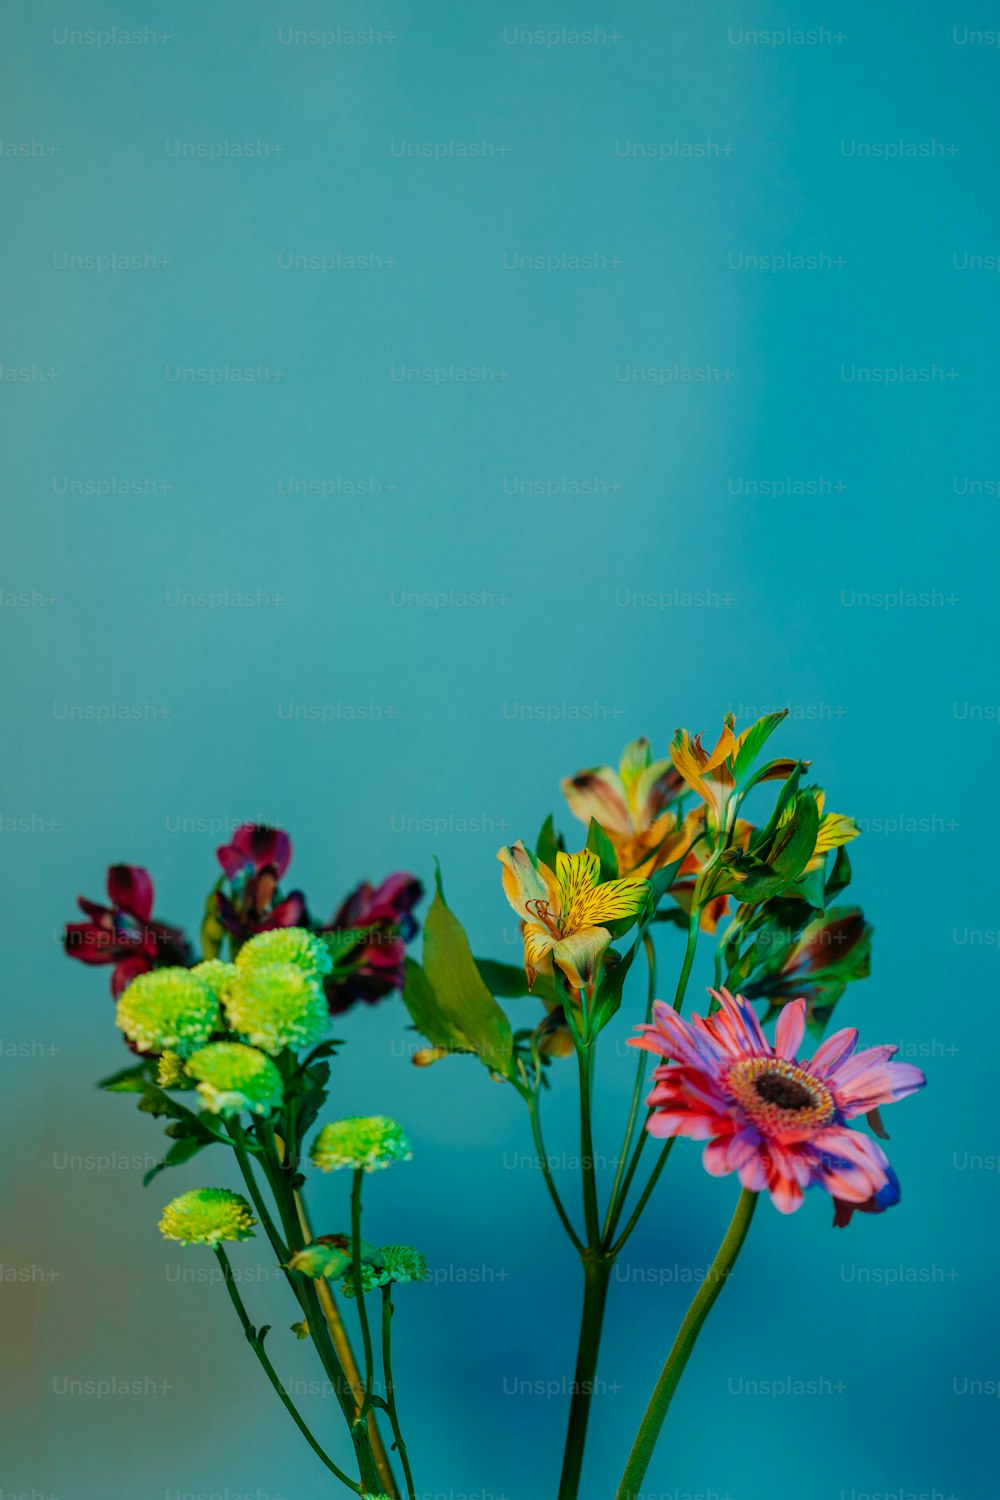 Un vase rempli de fleurs colorées sur une table